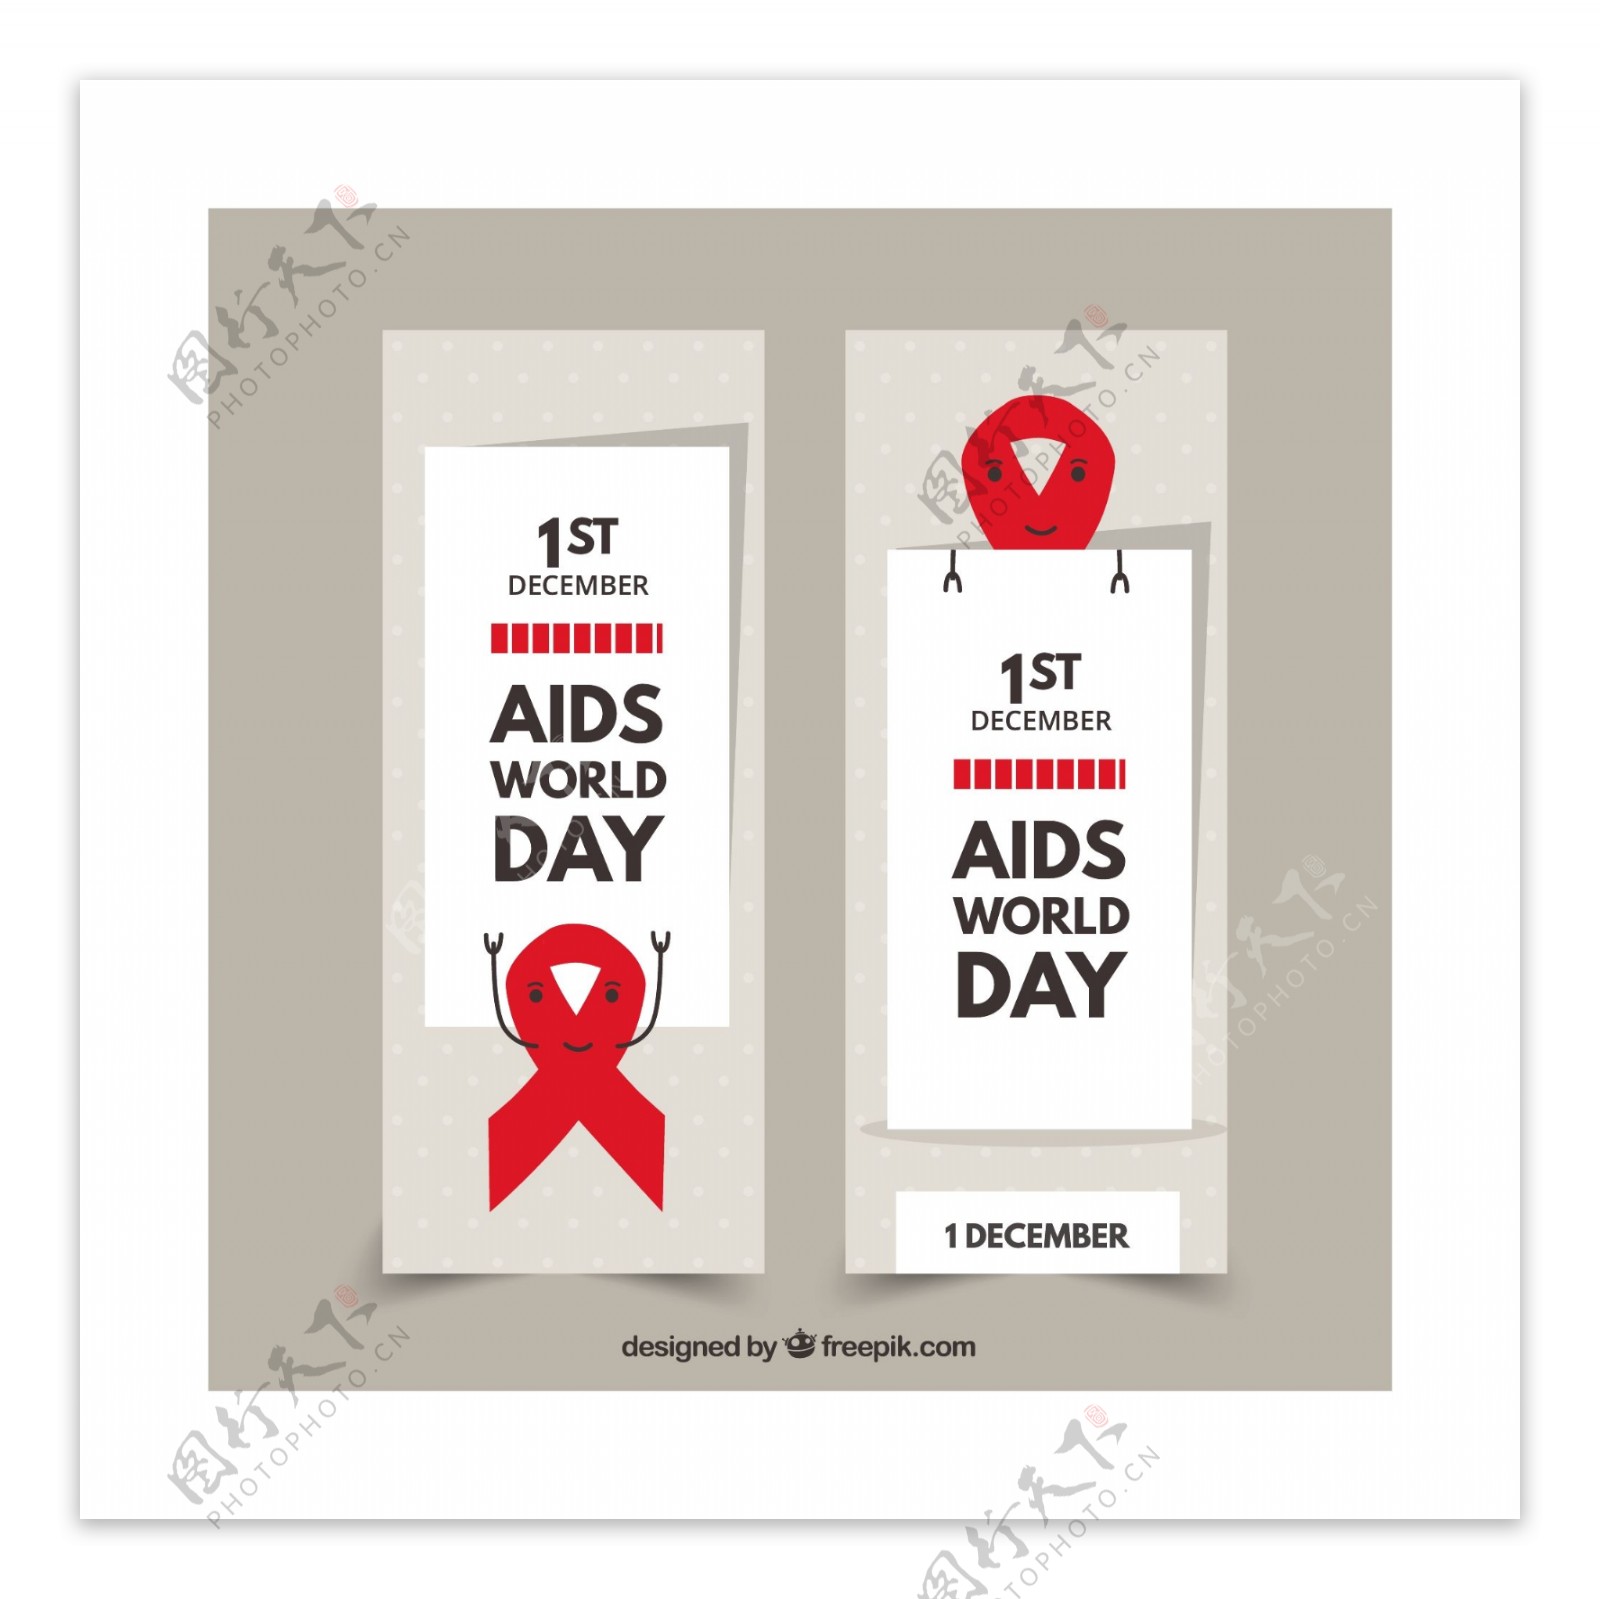 世界艾滋病日红丝带横幅